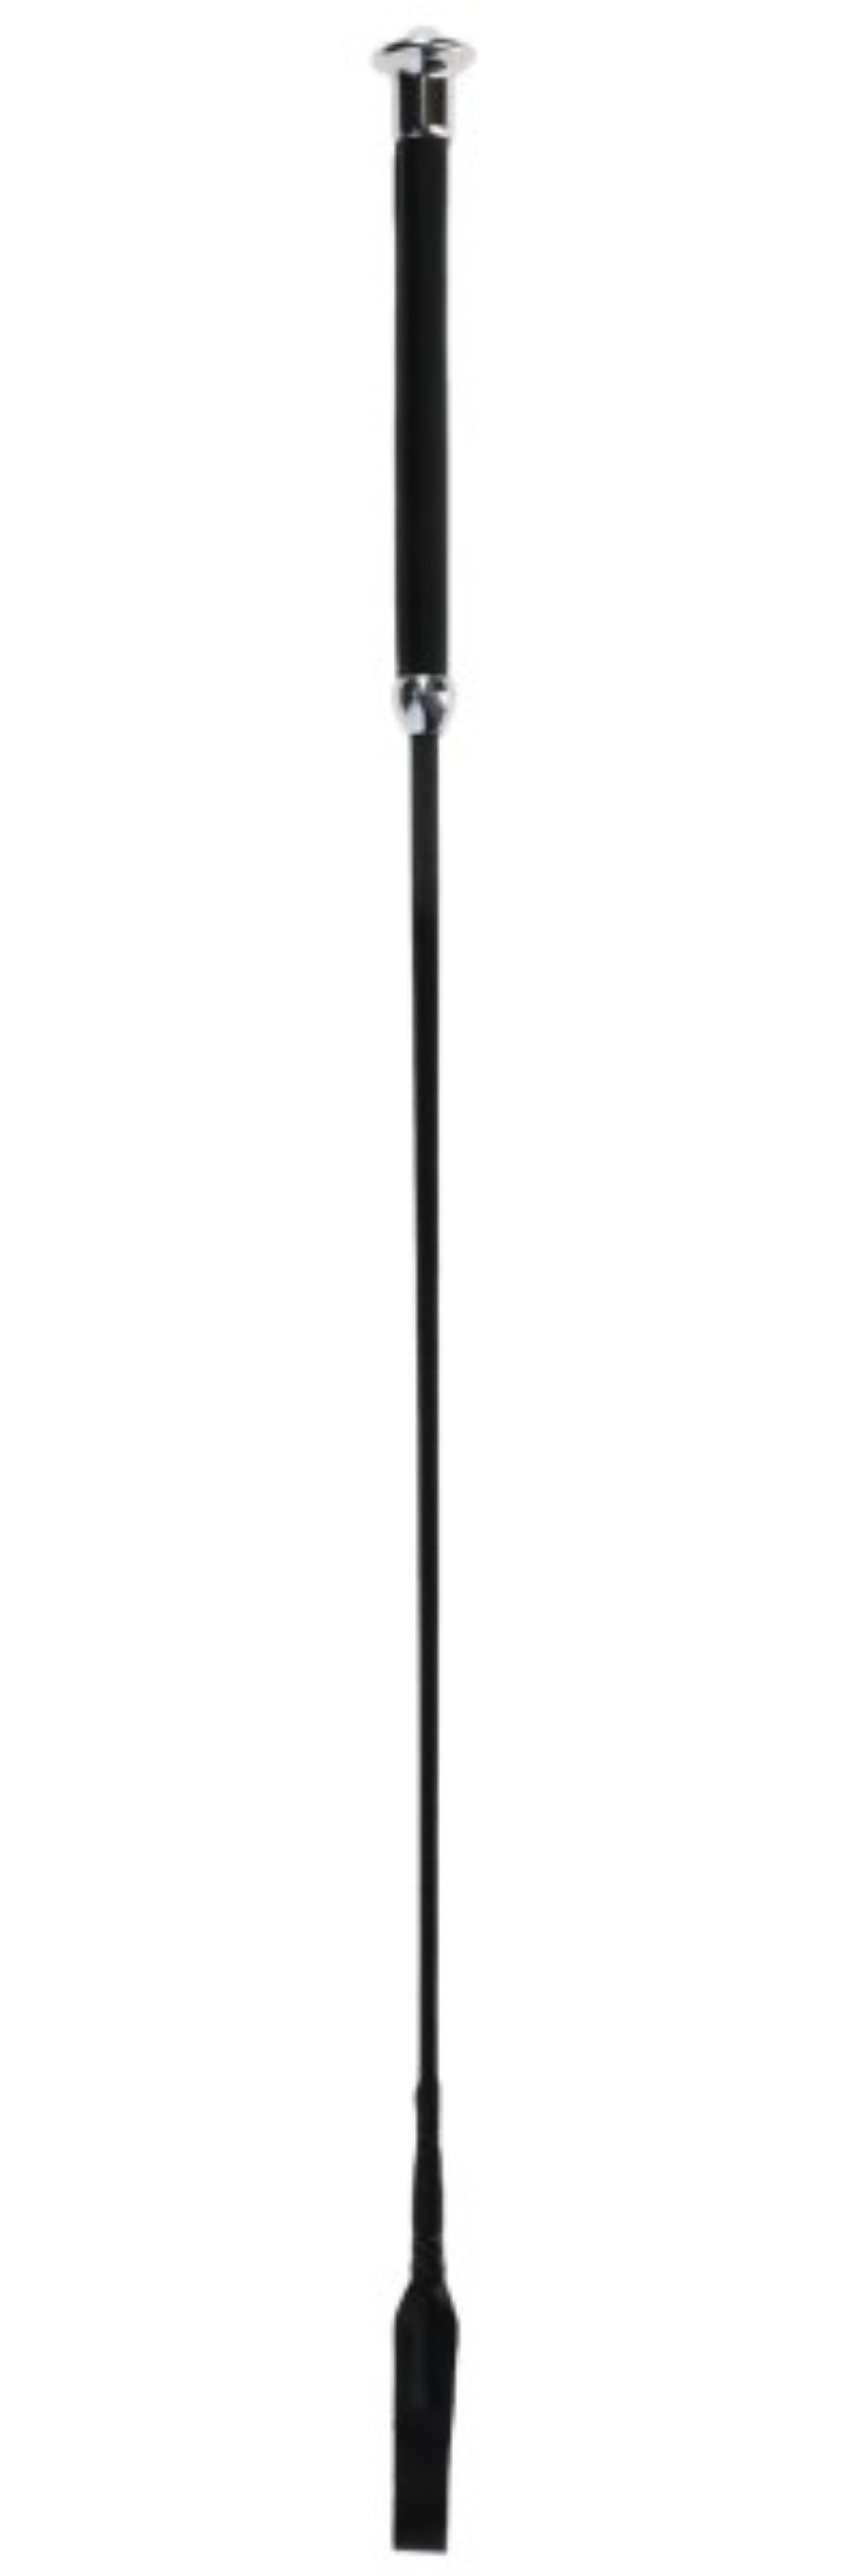 Kerbl Springgerte Springgerte mit Klatsche 65 cm schwarz 3226283, 1-tlg.